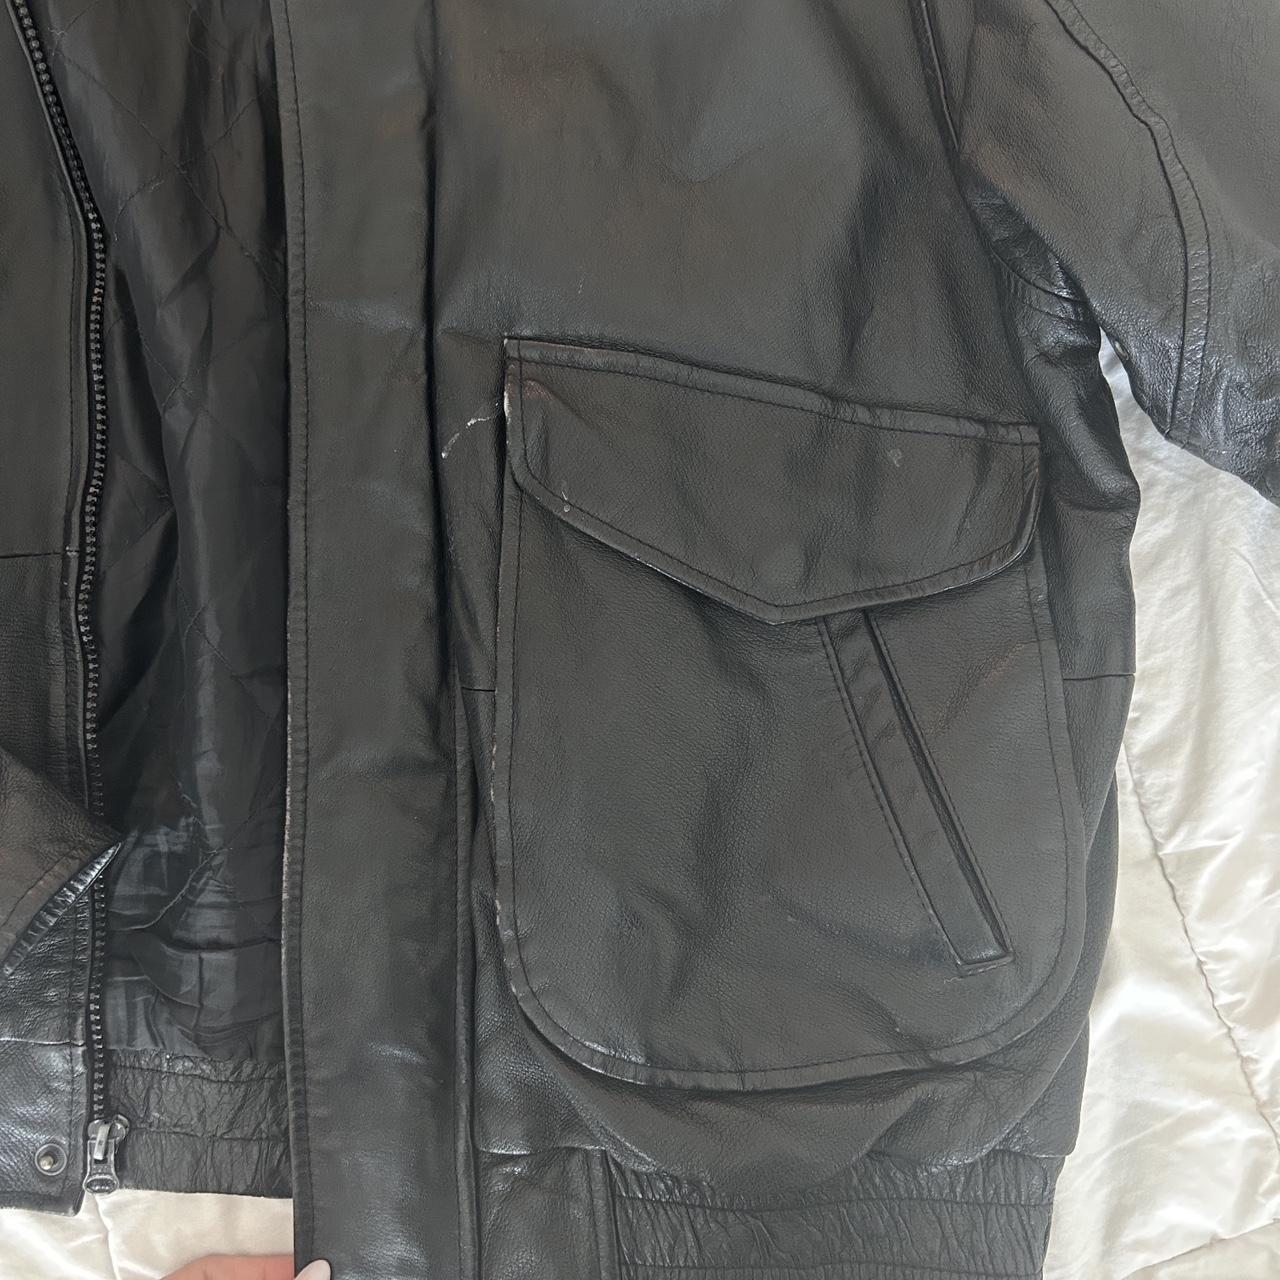 Vintage oversized genuine leather bomber jacket!... - Depop